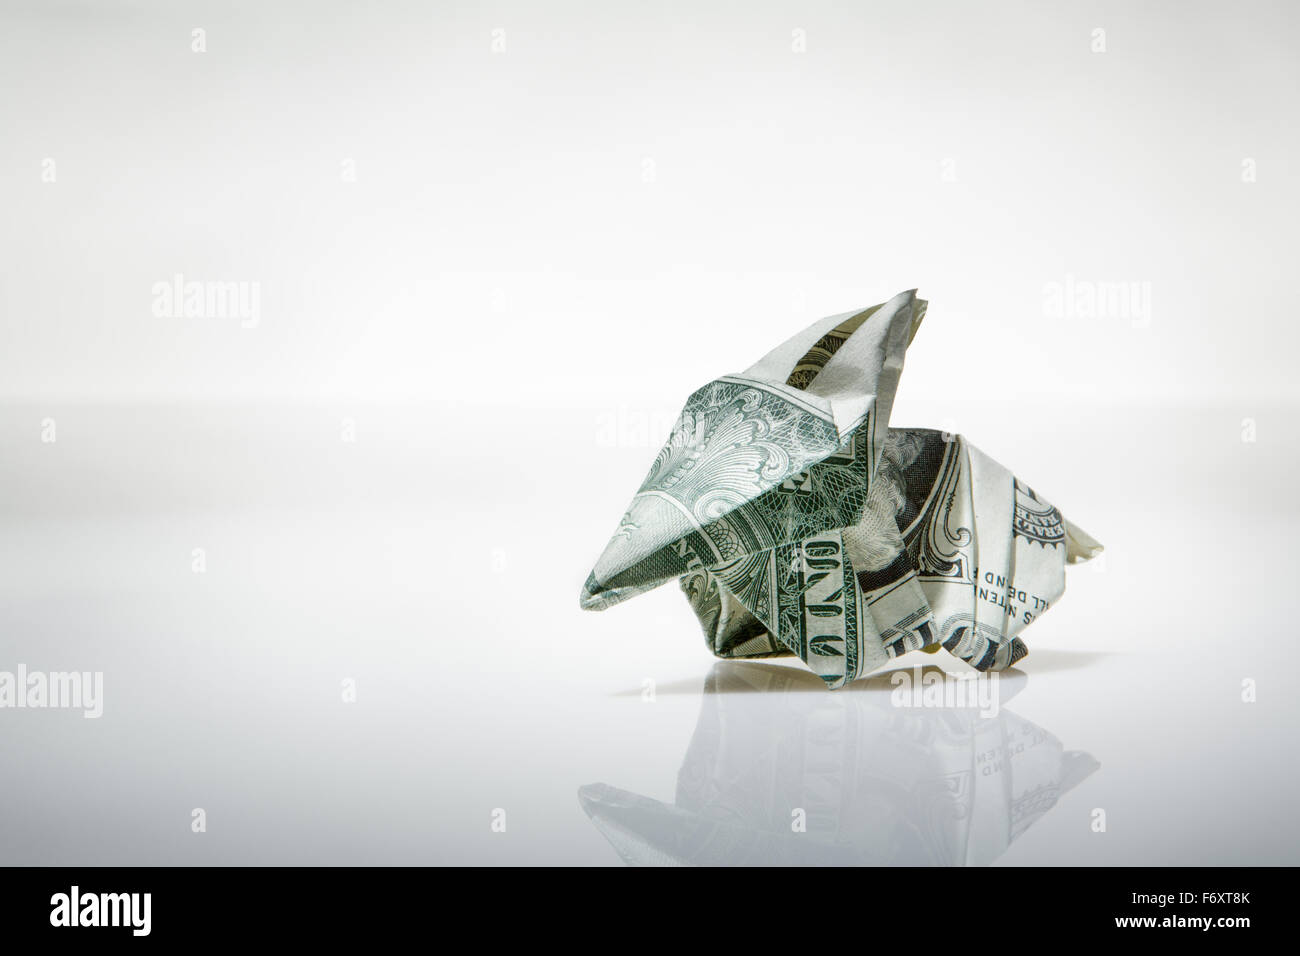 Stillleben-Bild von einem Origami Gürteltier machen von einem US-Dollar-note Stockfoto